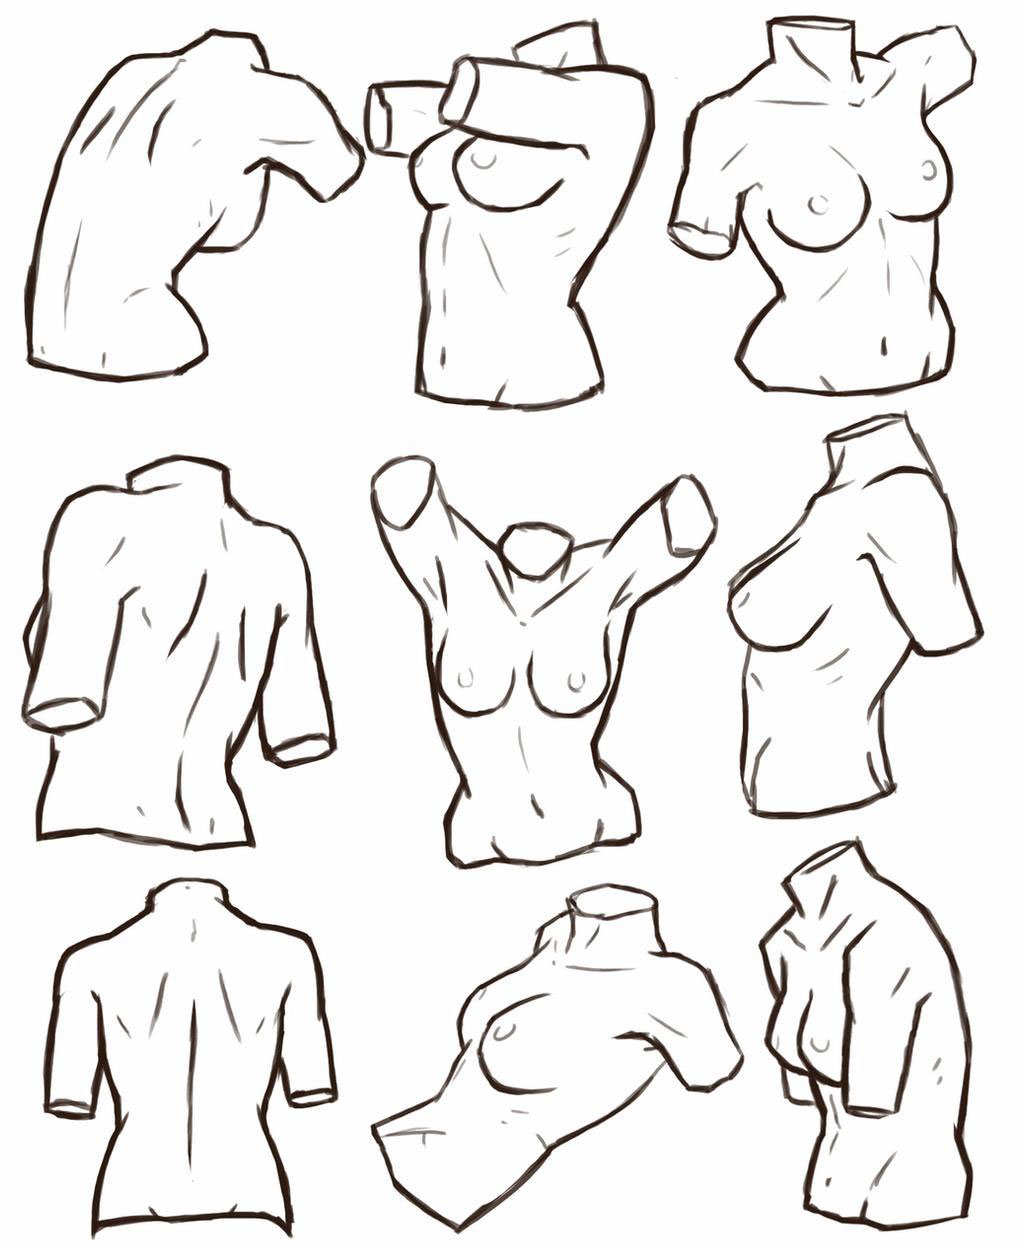 как нарисовать грудь как у аниме фото 27